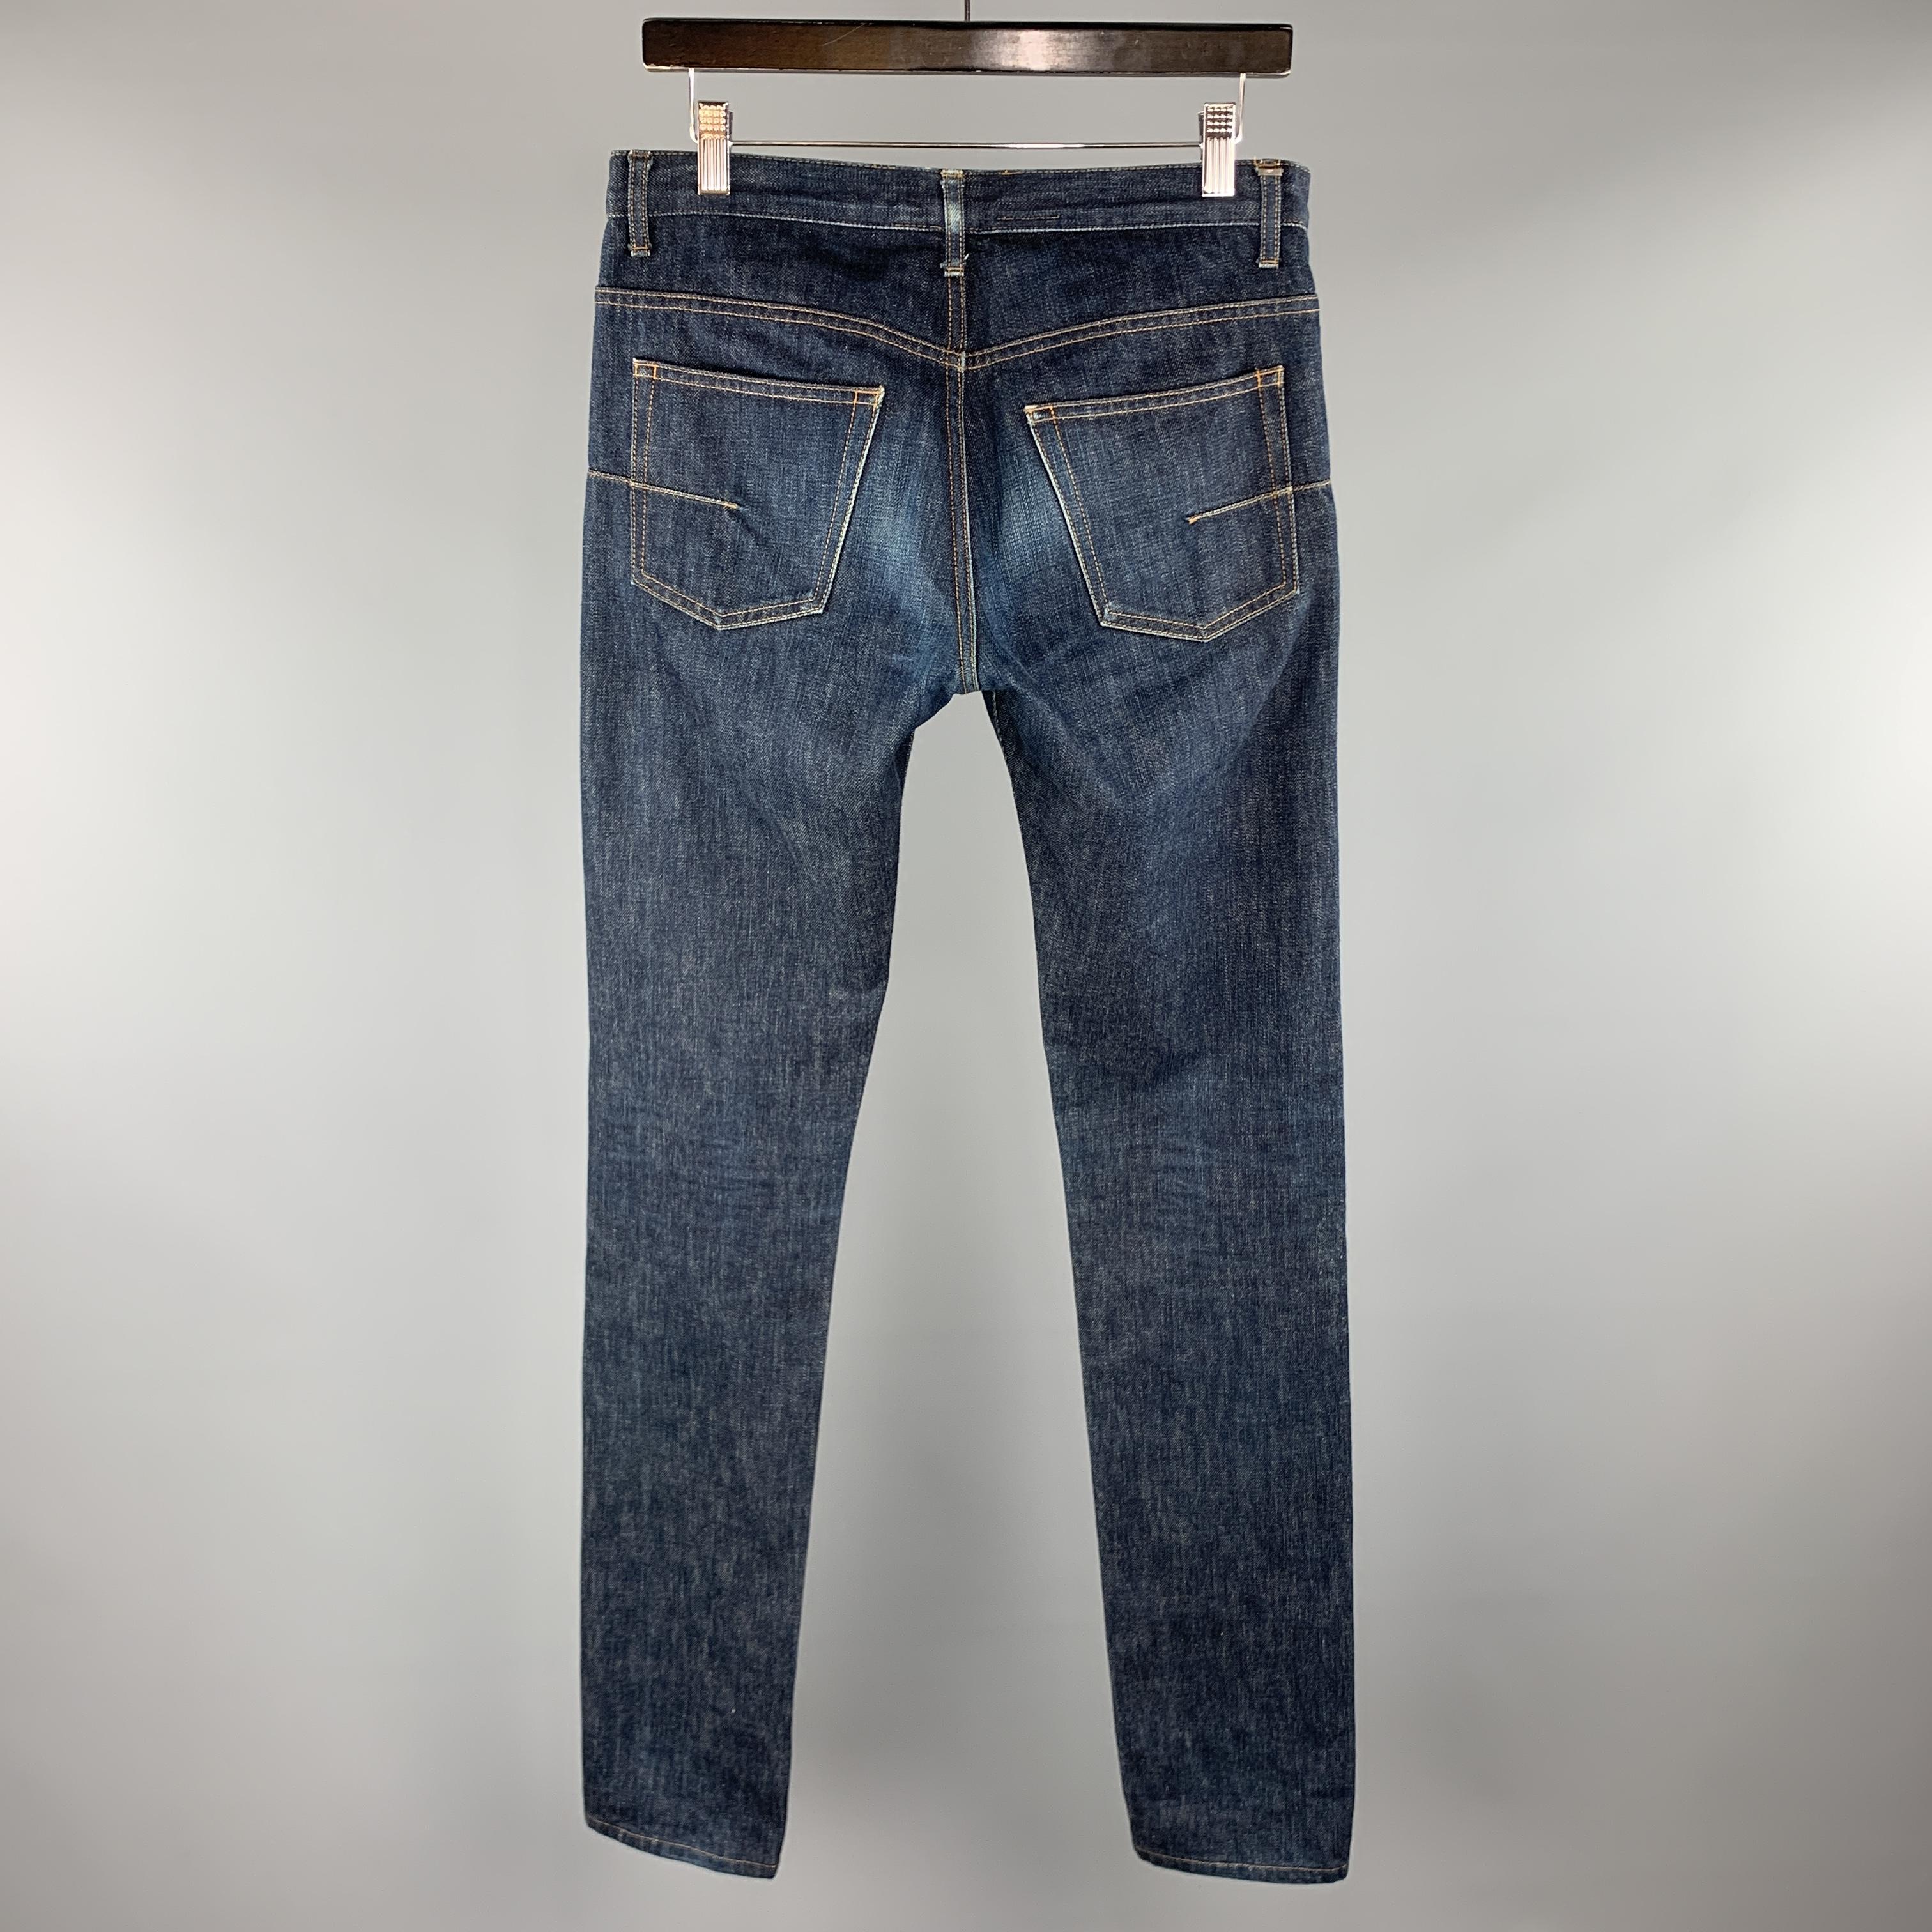 Men's DIOR HOMME Size 31 x 29 Indigo Wash Denim Button Fly Jeans